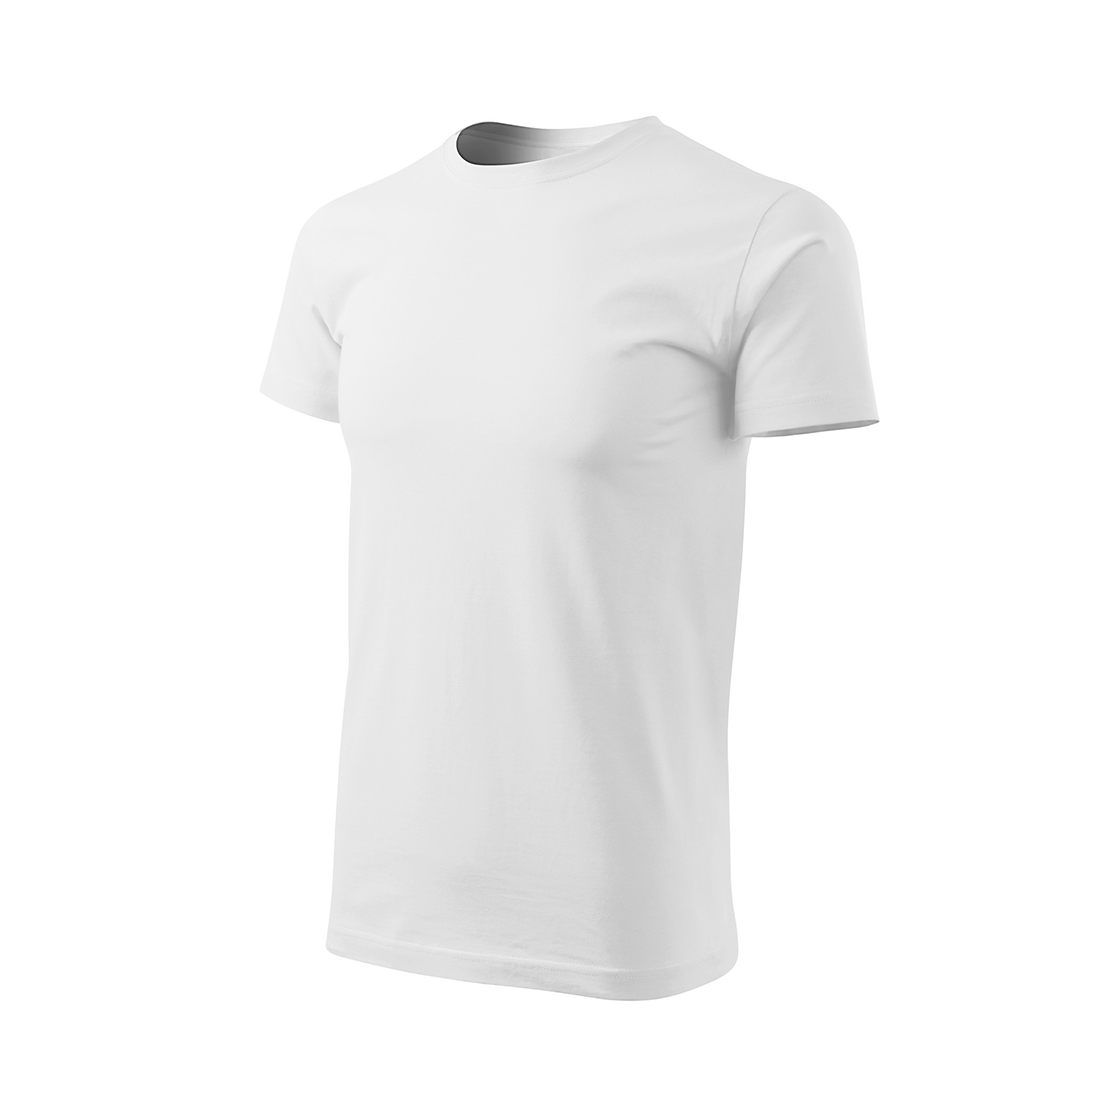 Tee-shirt homme BASIC - Les vêtements de protection